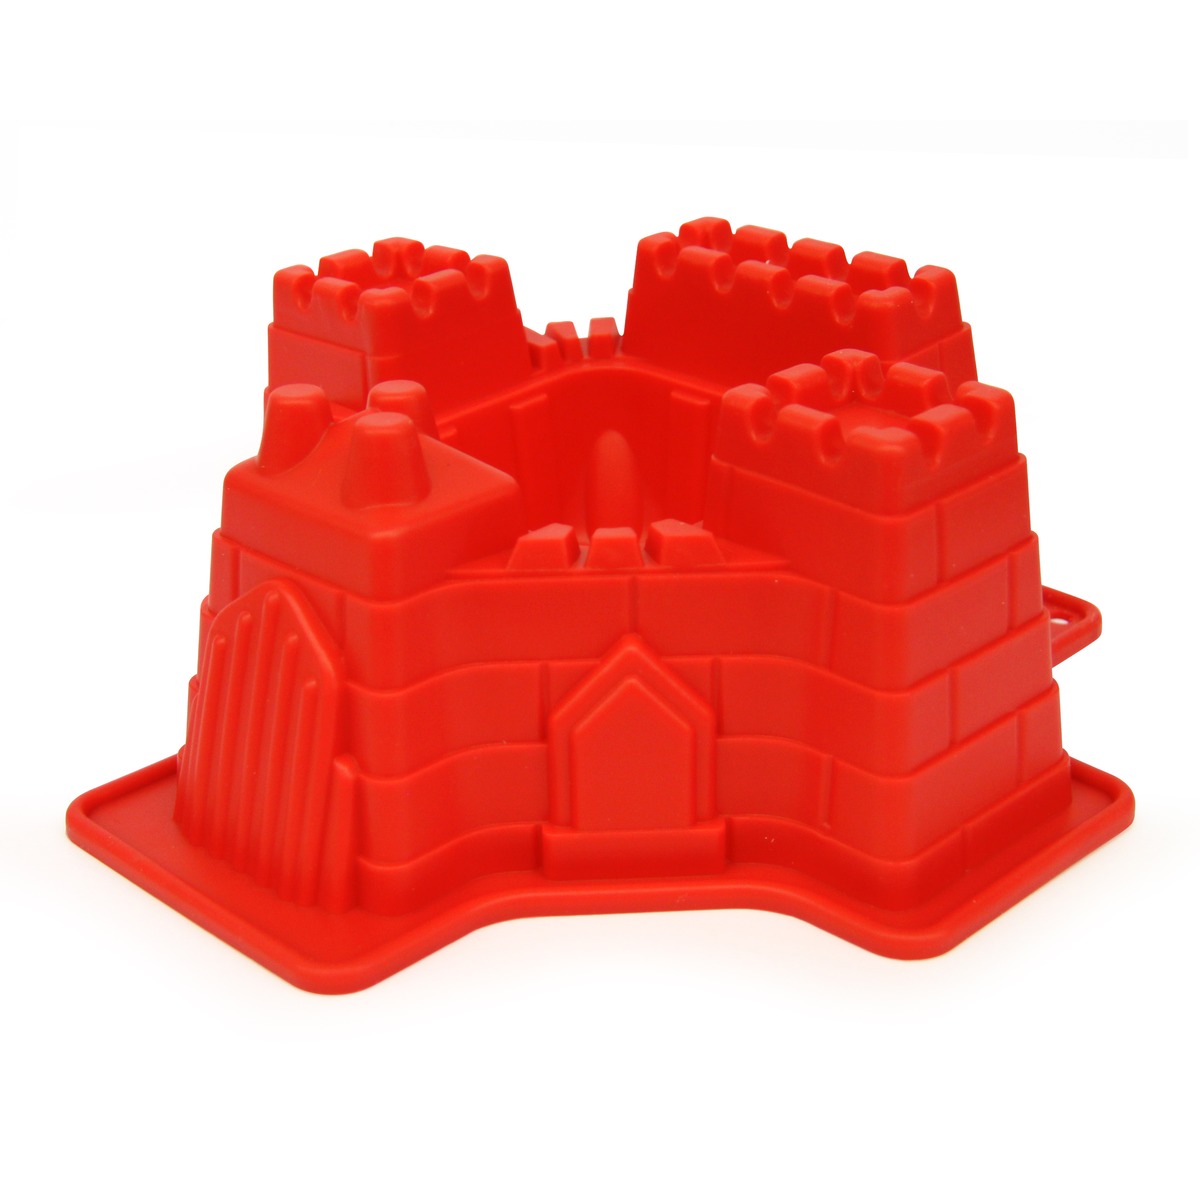 Moule à gâteau en forme de château fort - Antiadhésif - 21 x 20 x 8 cm - Orange